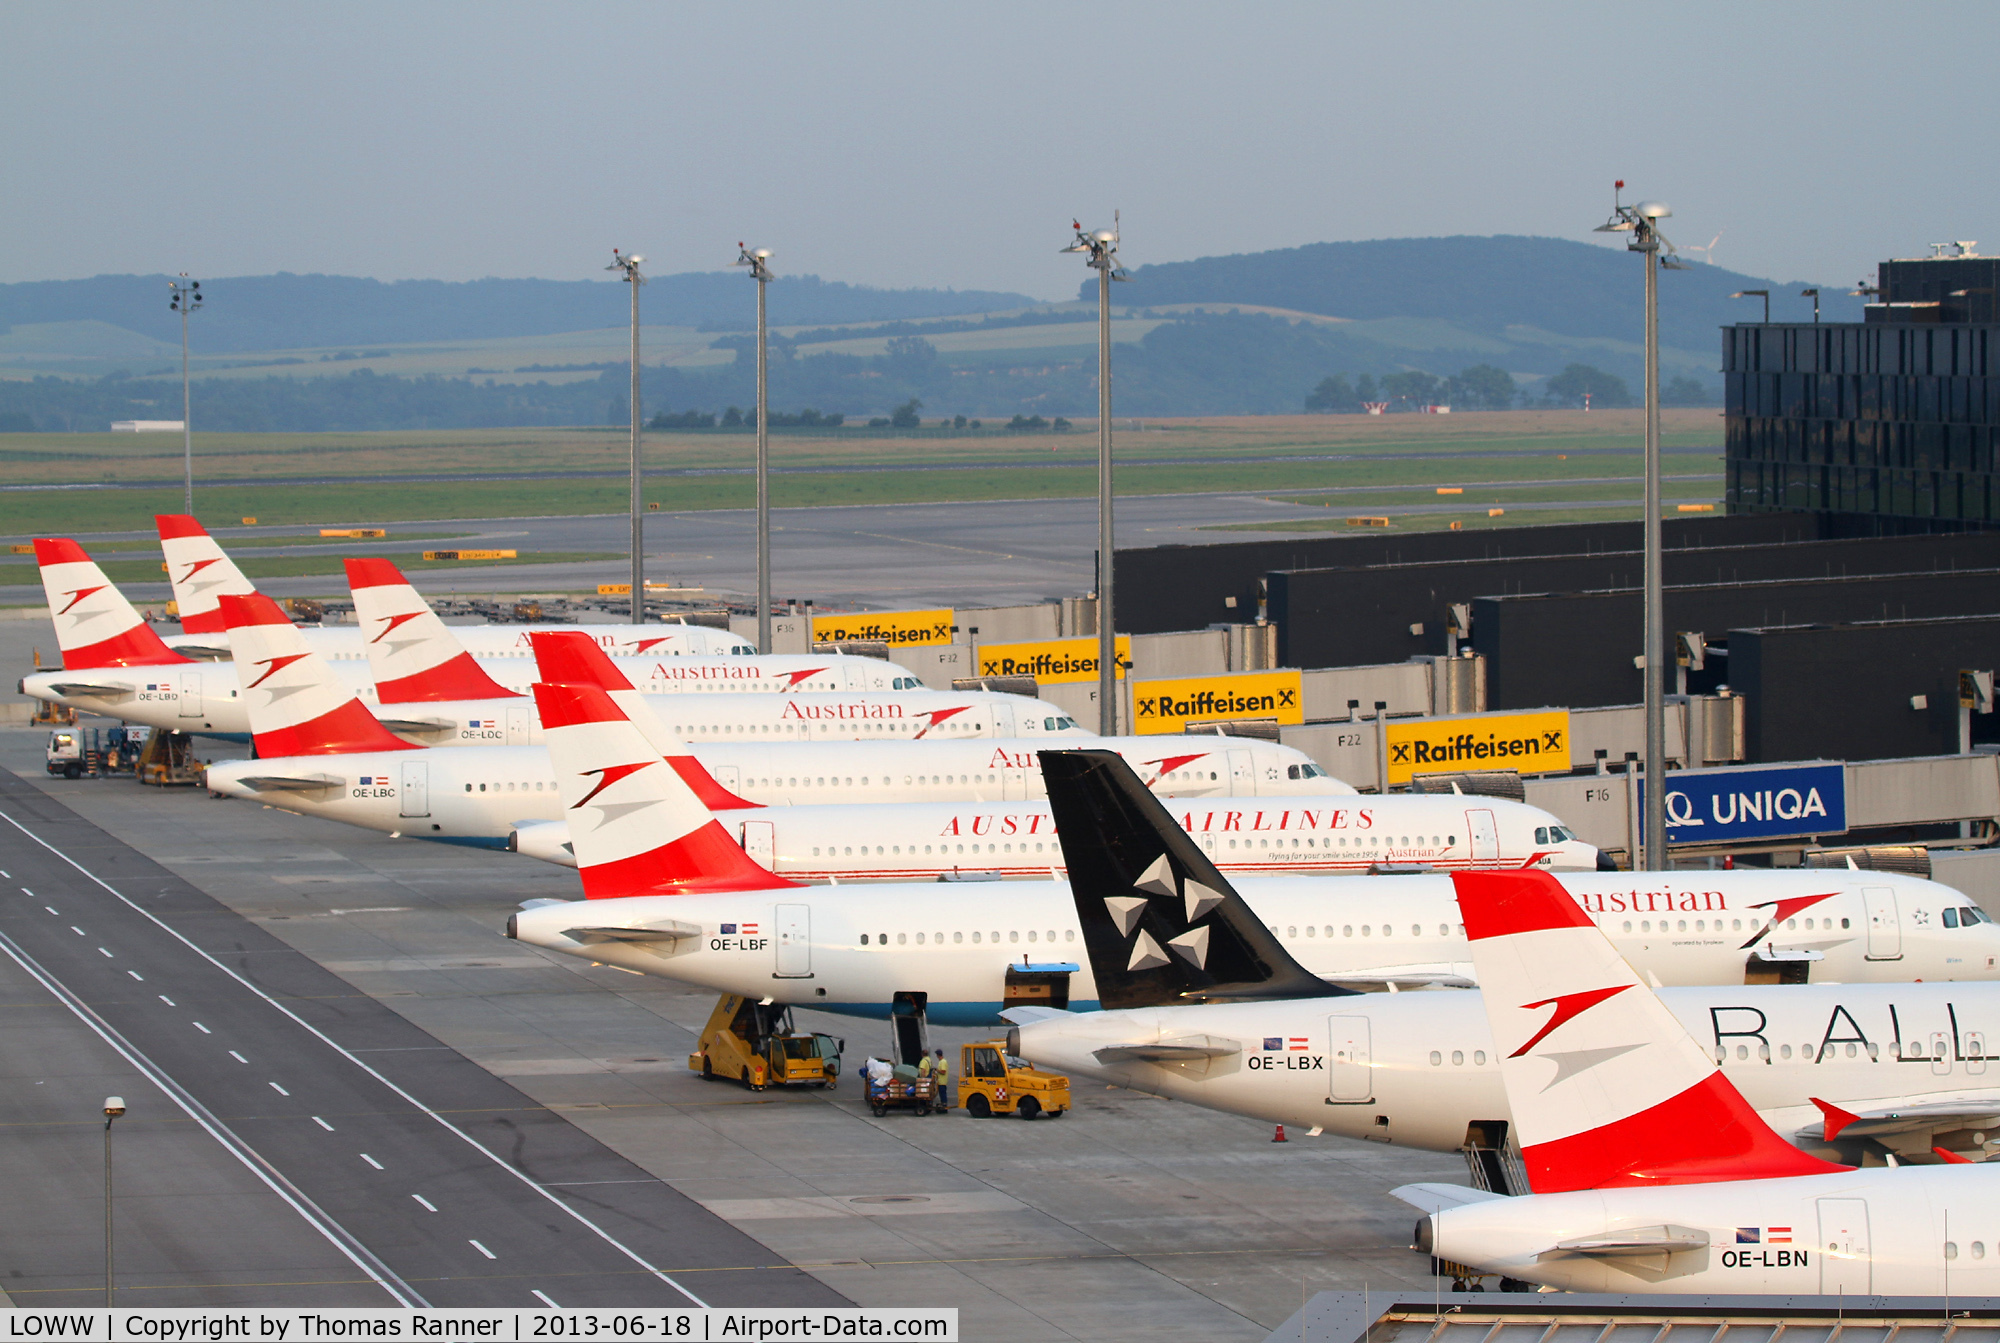 Vienna International Airport, Vienna Austria (LOWW) - Star Alliance Terminal